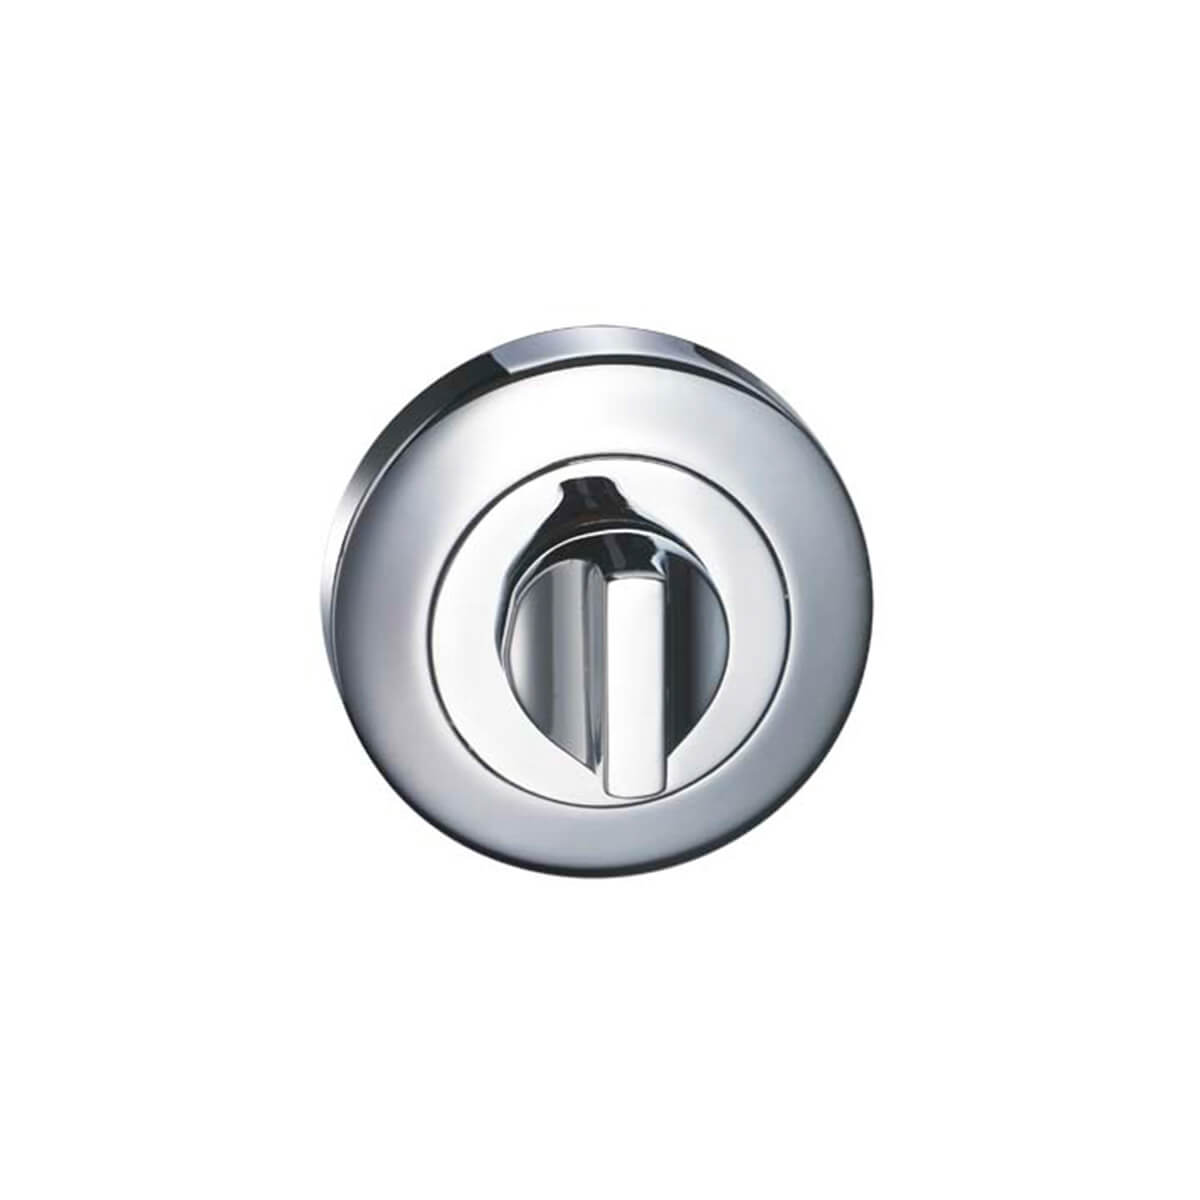 53mm Round Turn Button Escutcheon - Chrome Plate